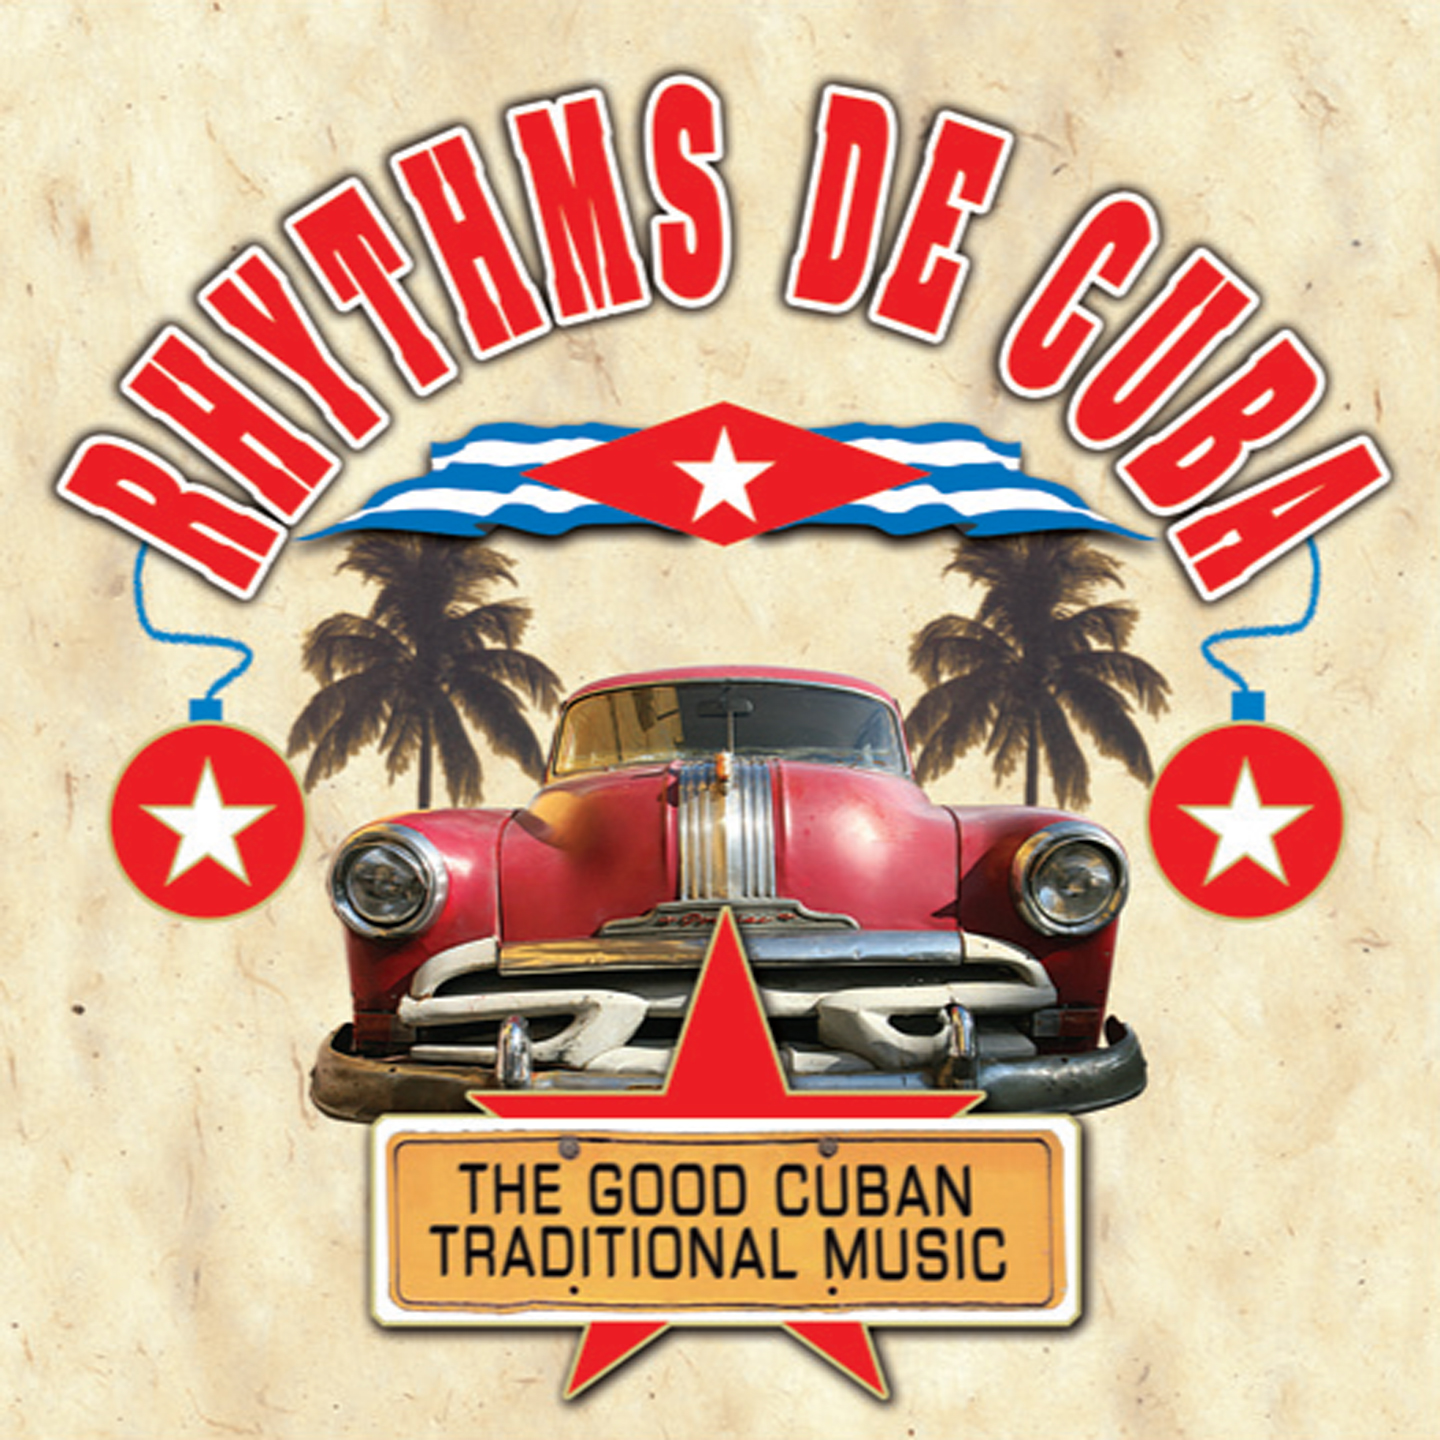 RHYTHMS DE CUBA - THE GOOD CUBAN TRADITIONAL MUSIC